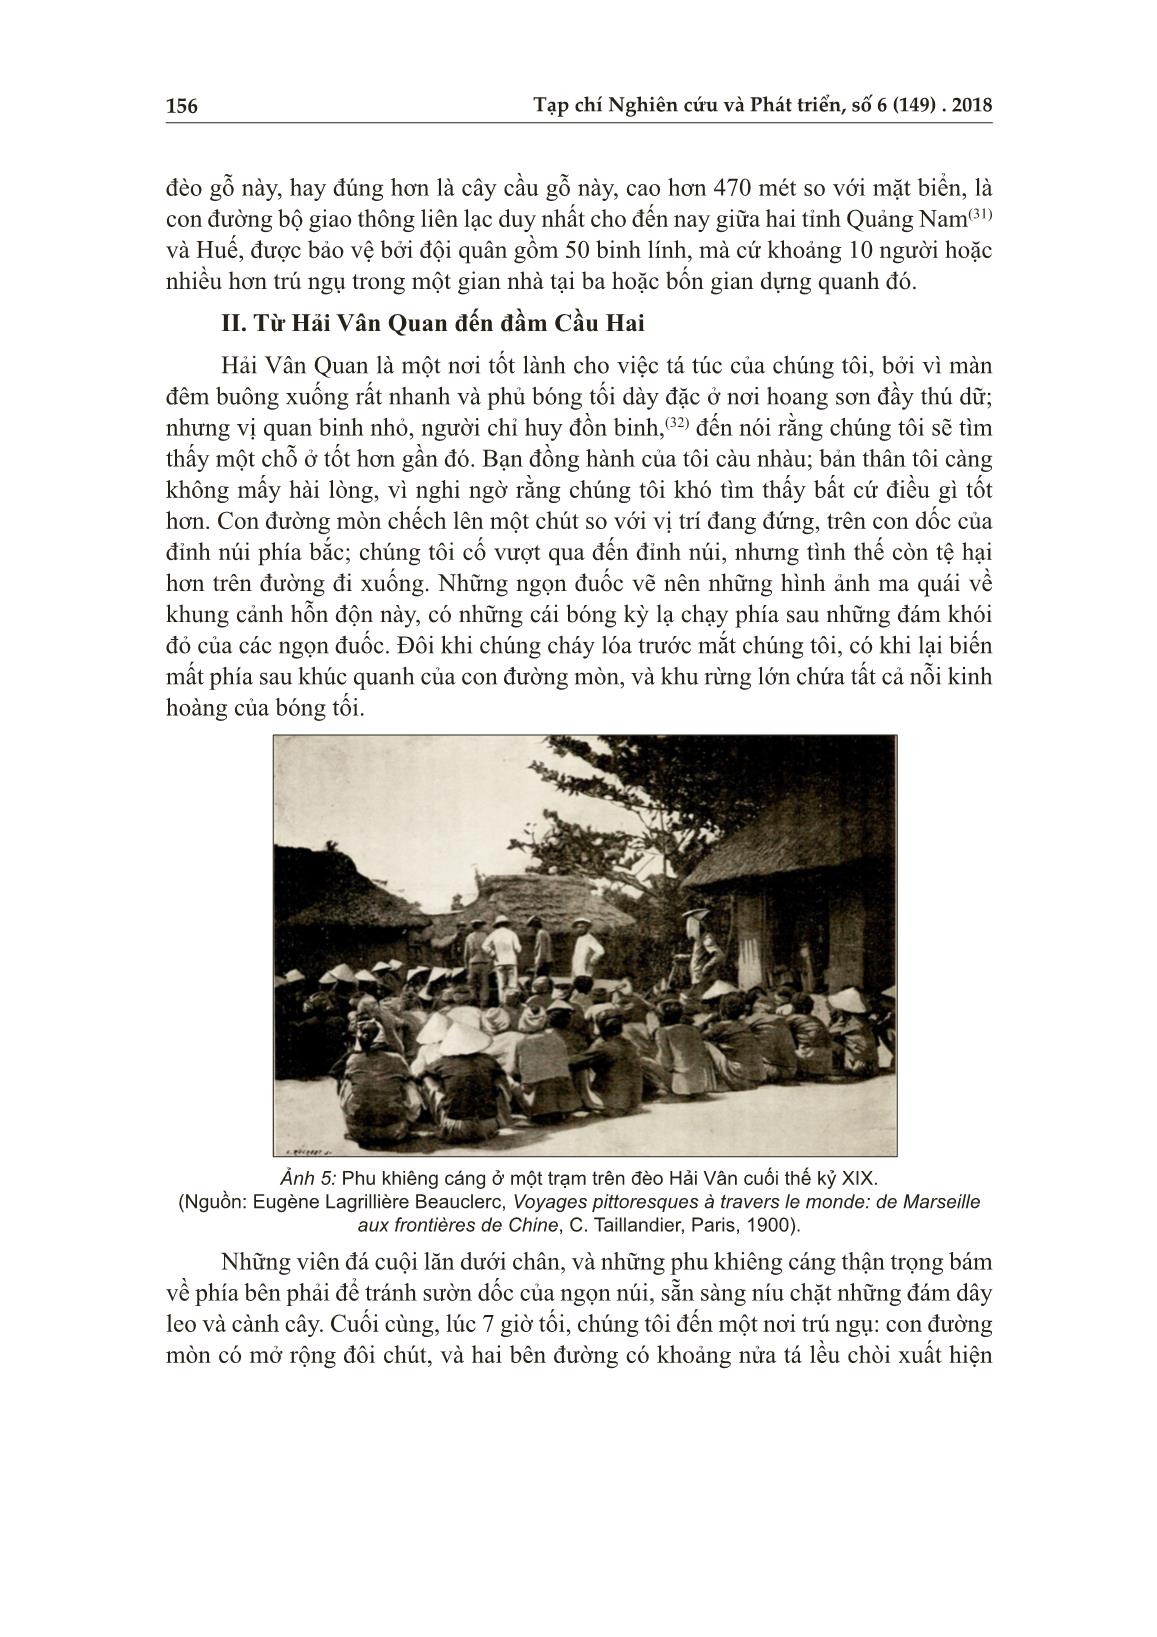 Từ đèo Hải Vân đến sông An Cựu - Huế năm 1876 trang 9